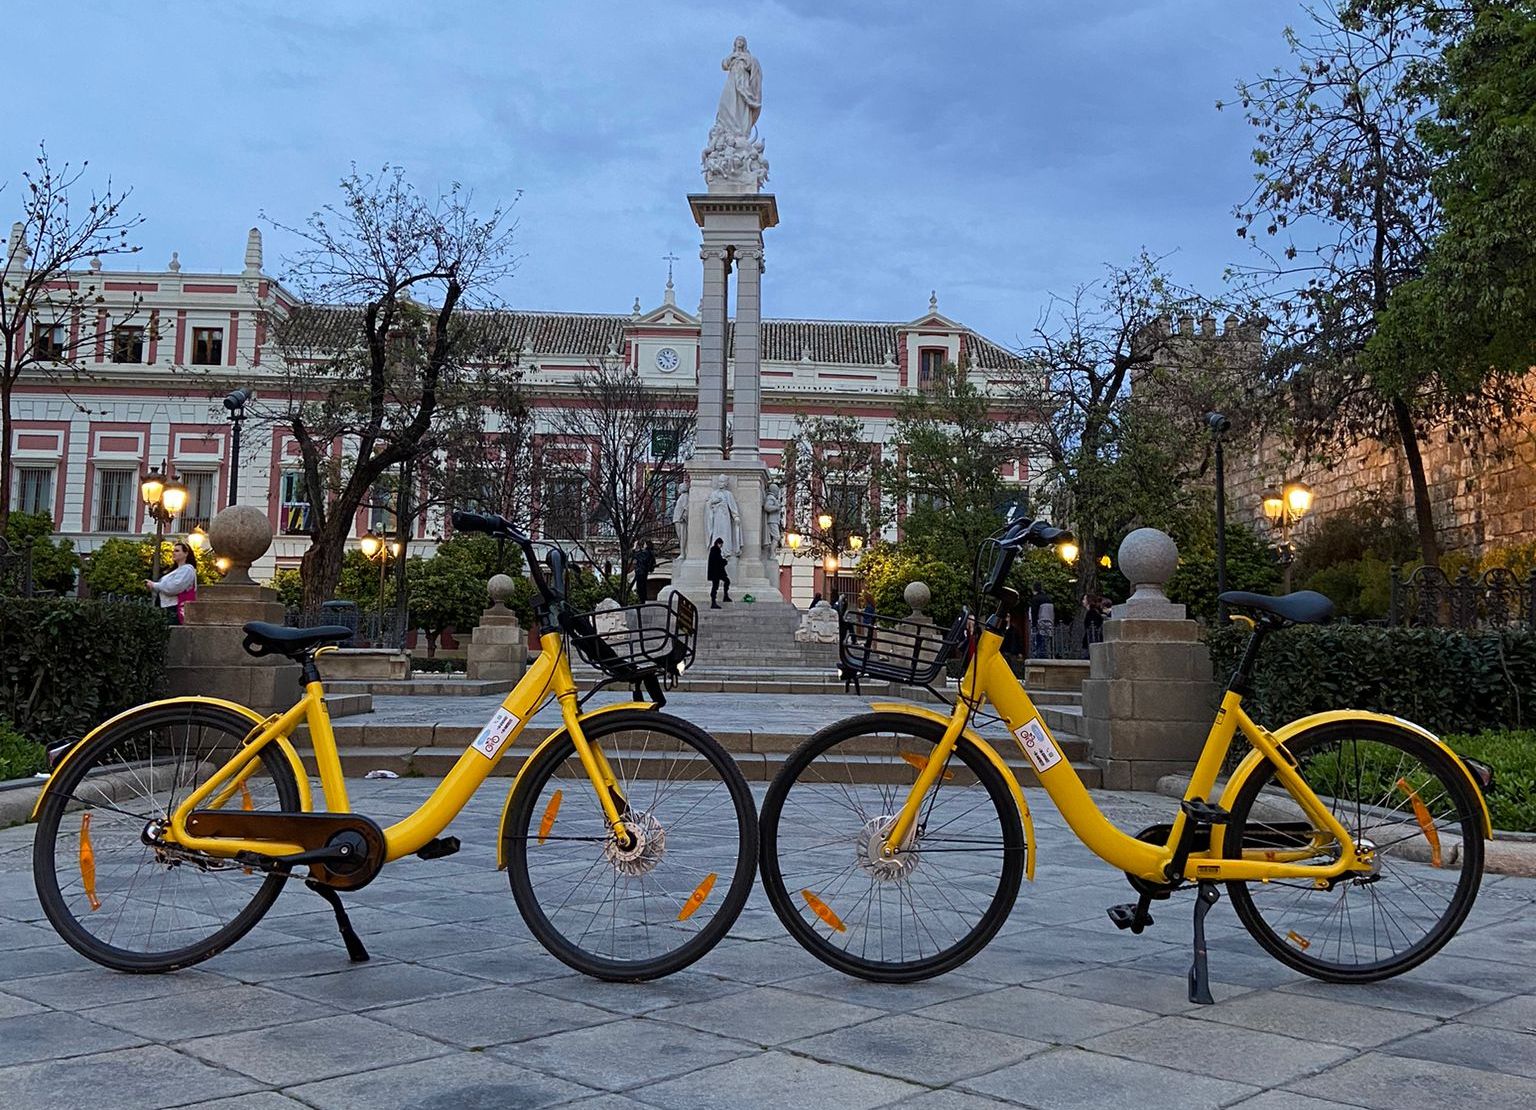 Alquila una de nuestras bicicletas para recorrer Sevilla !!